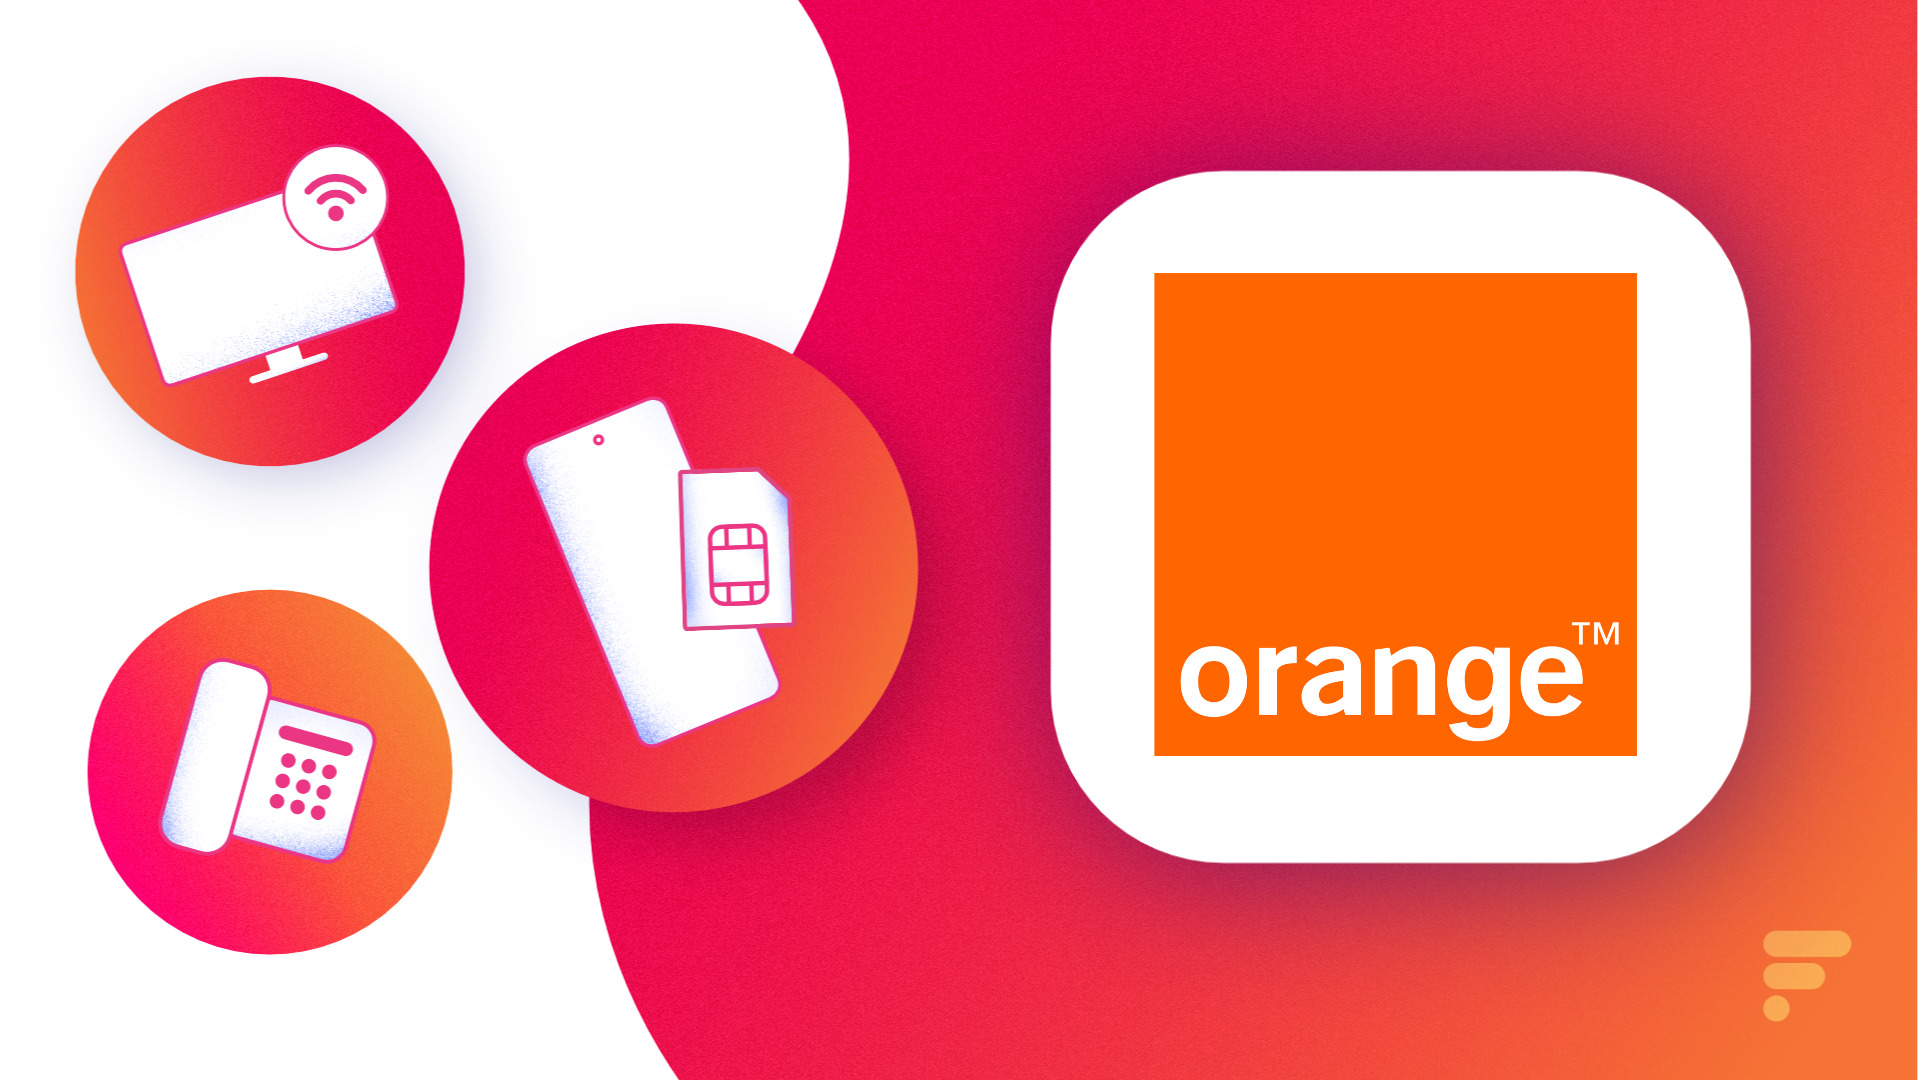 Orange - Promo Répéteur wifi Jusqu'au 12 septembre 2021